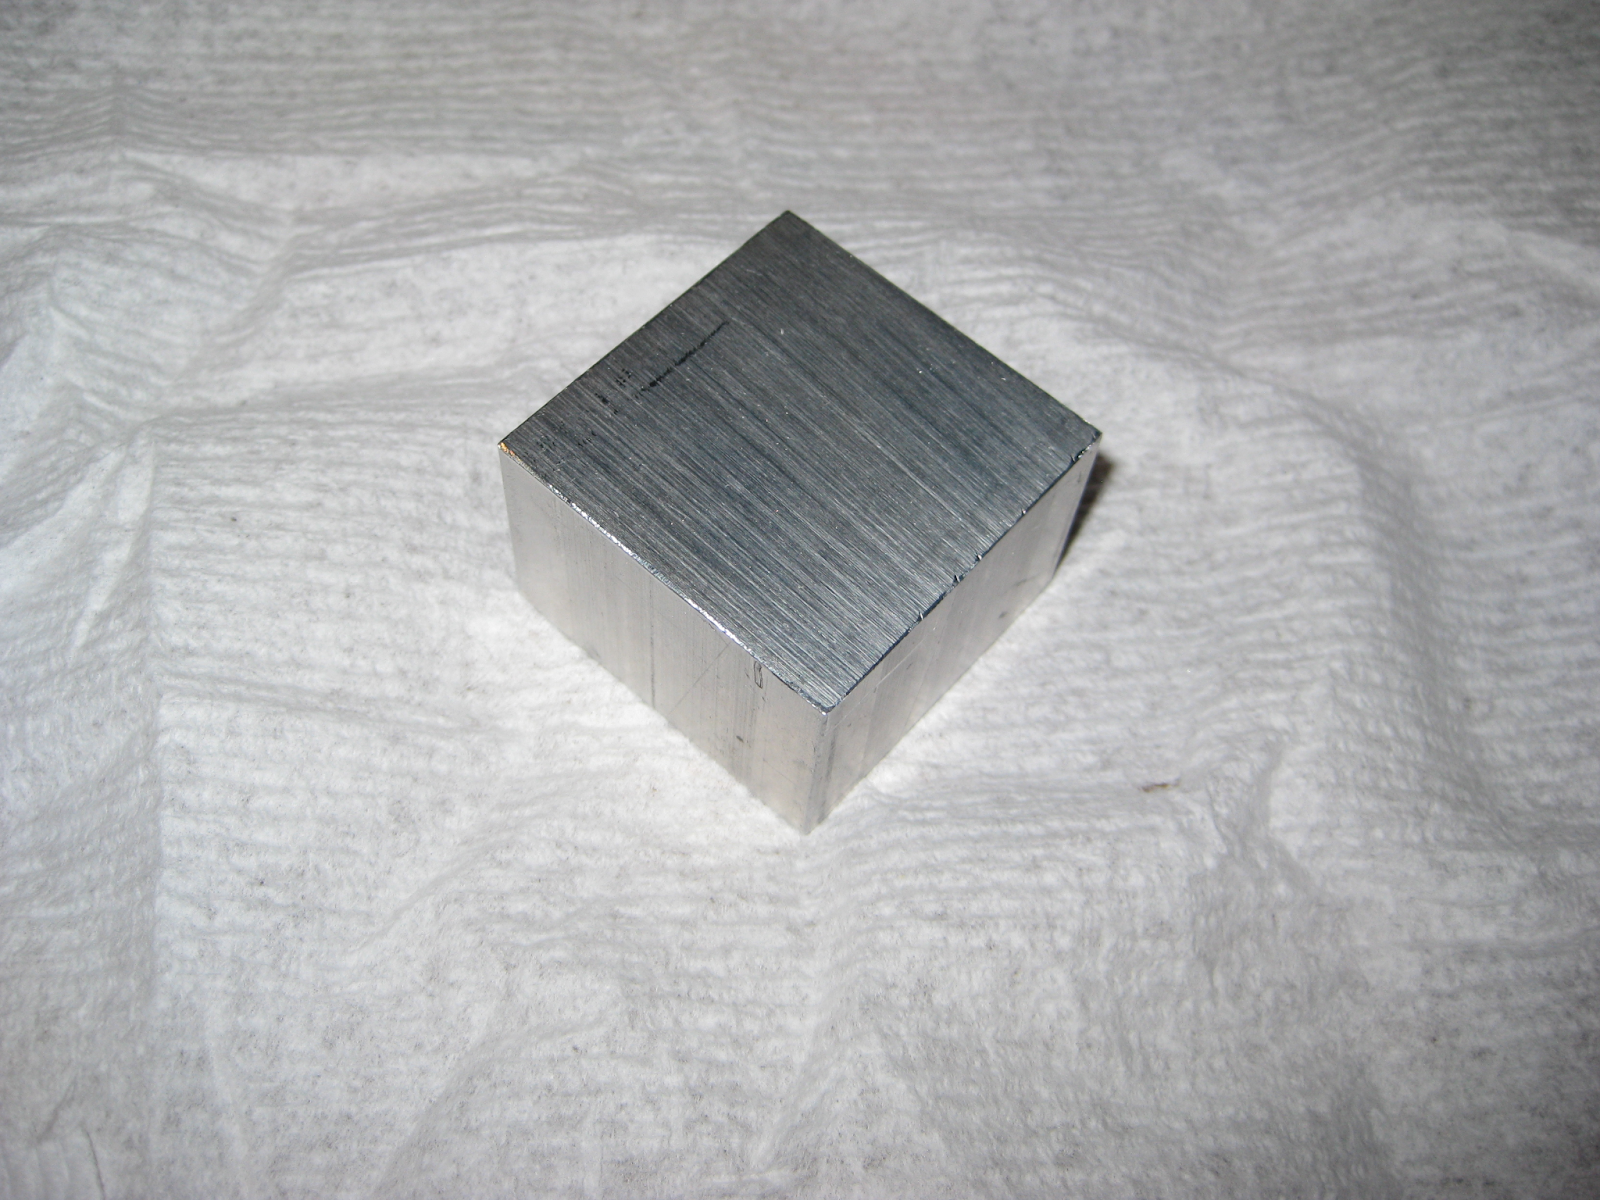 Aluminum block